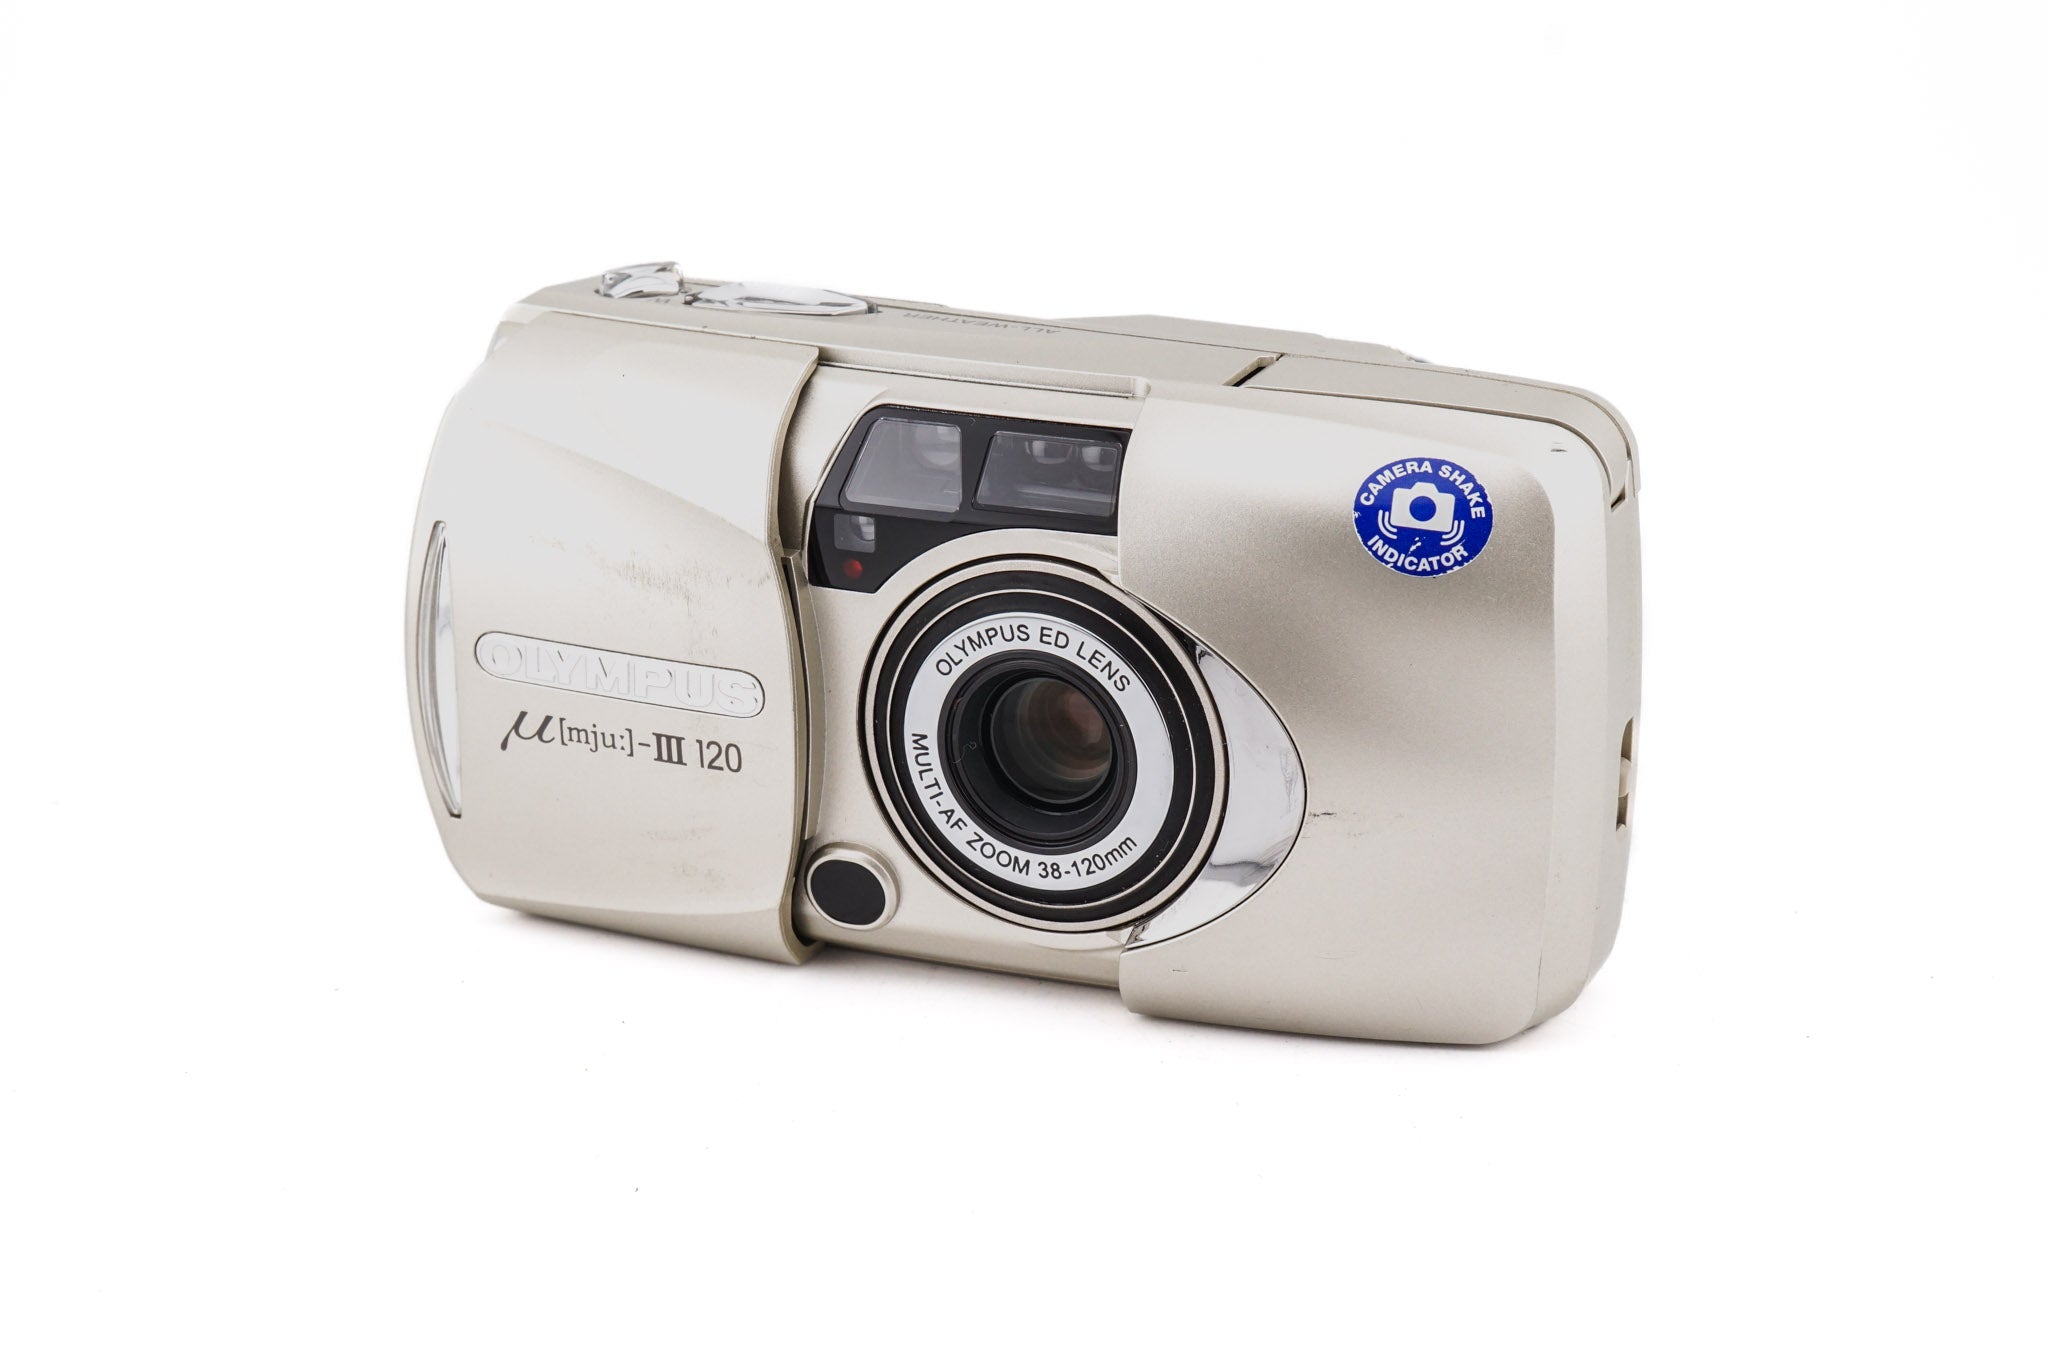 Mju-III 120 Camera